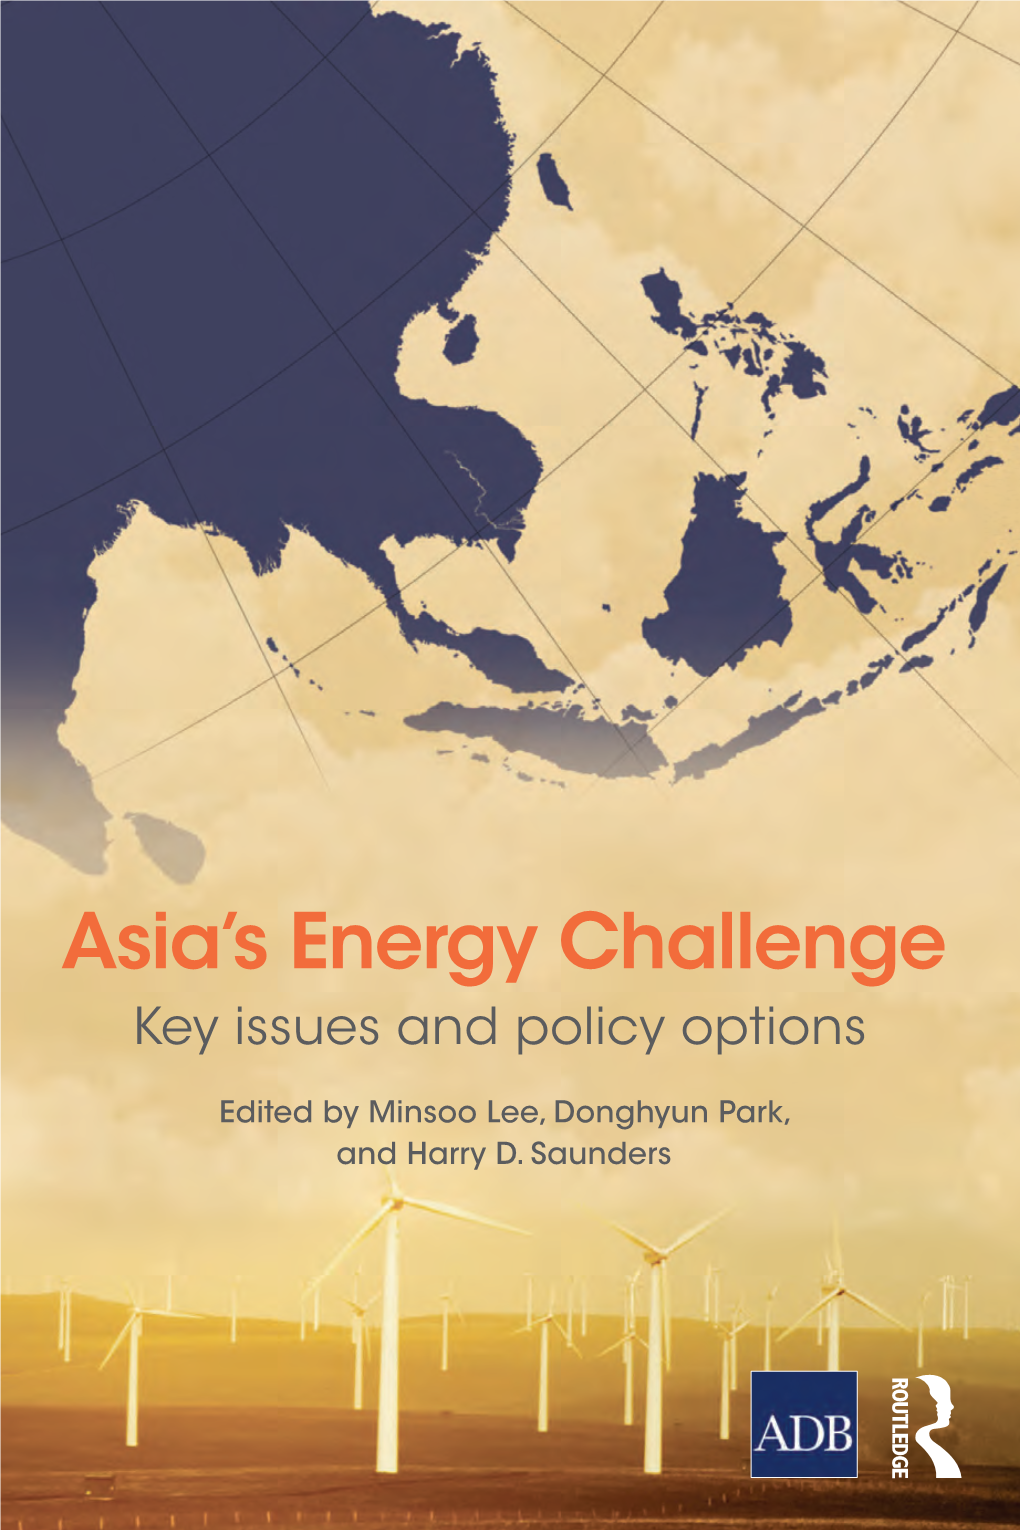 Asia's Energy Challenge